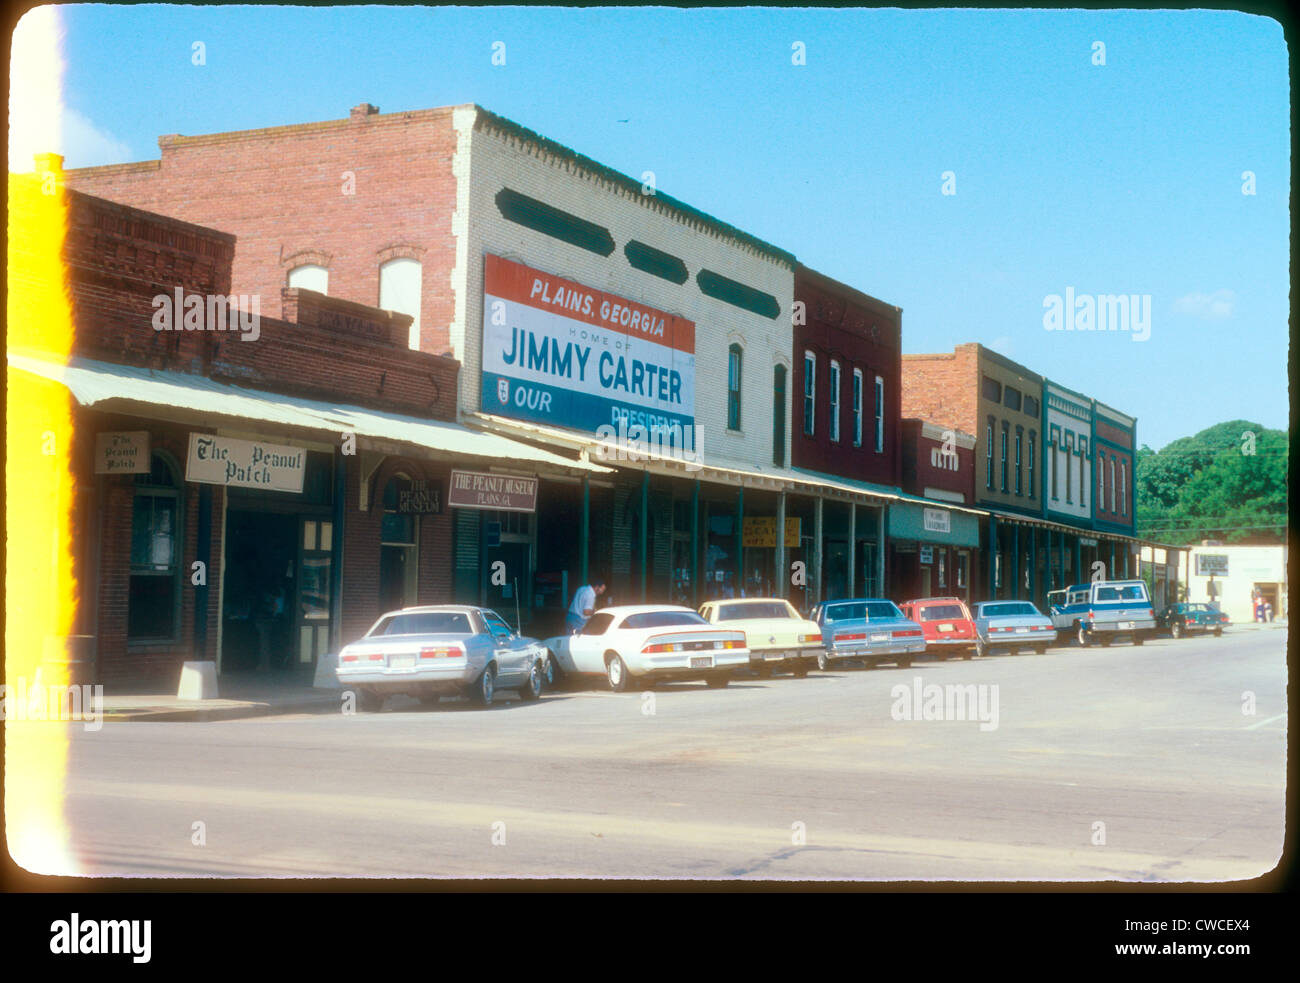 Die Innenstadt von Plains Georgia Jimmy Carter nach Hause unser Präsident 1979 Zeichen Stadt Scape amerikanischen Präsidenten Wahljahres Stockfoto